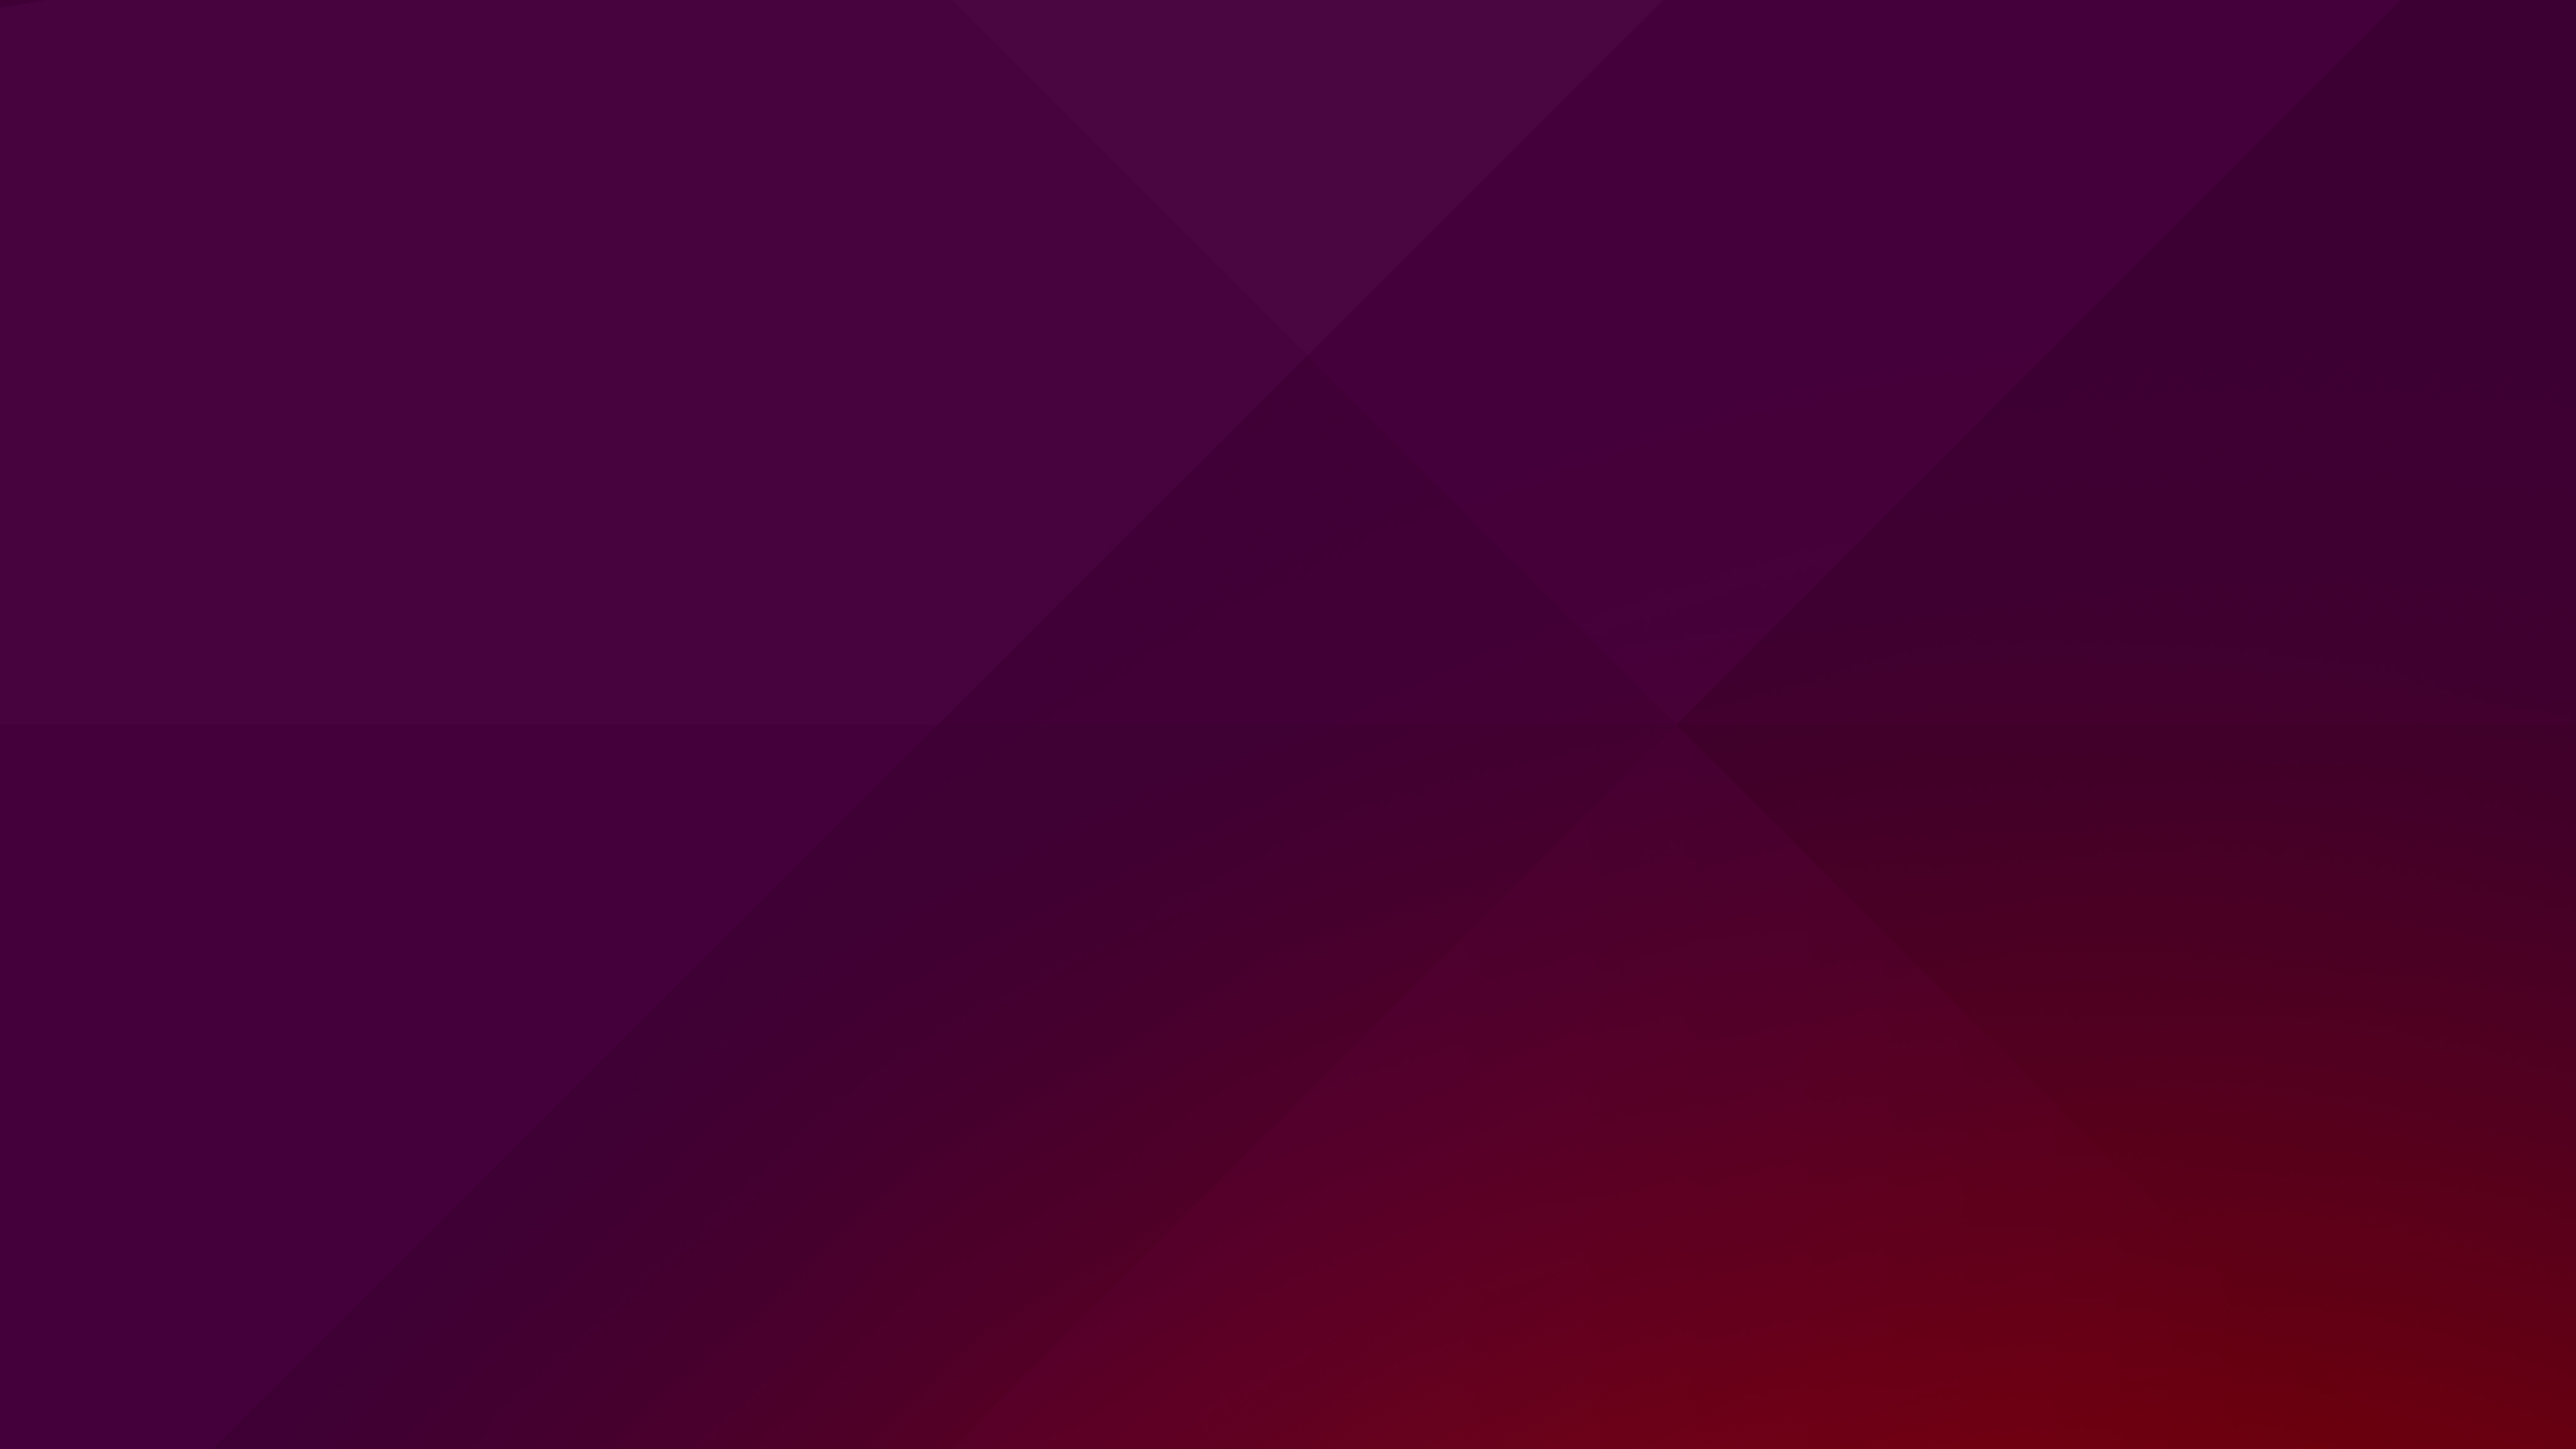 The Ubuntu Default Desktop Wallpaper